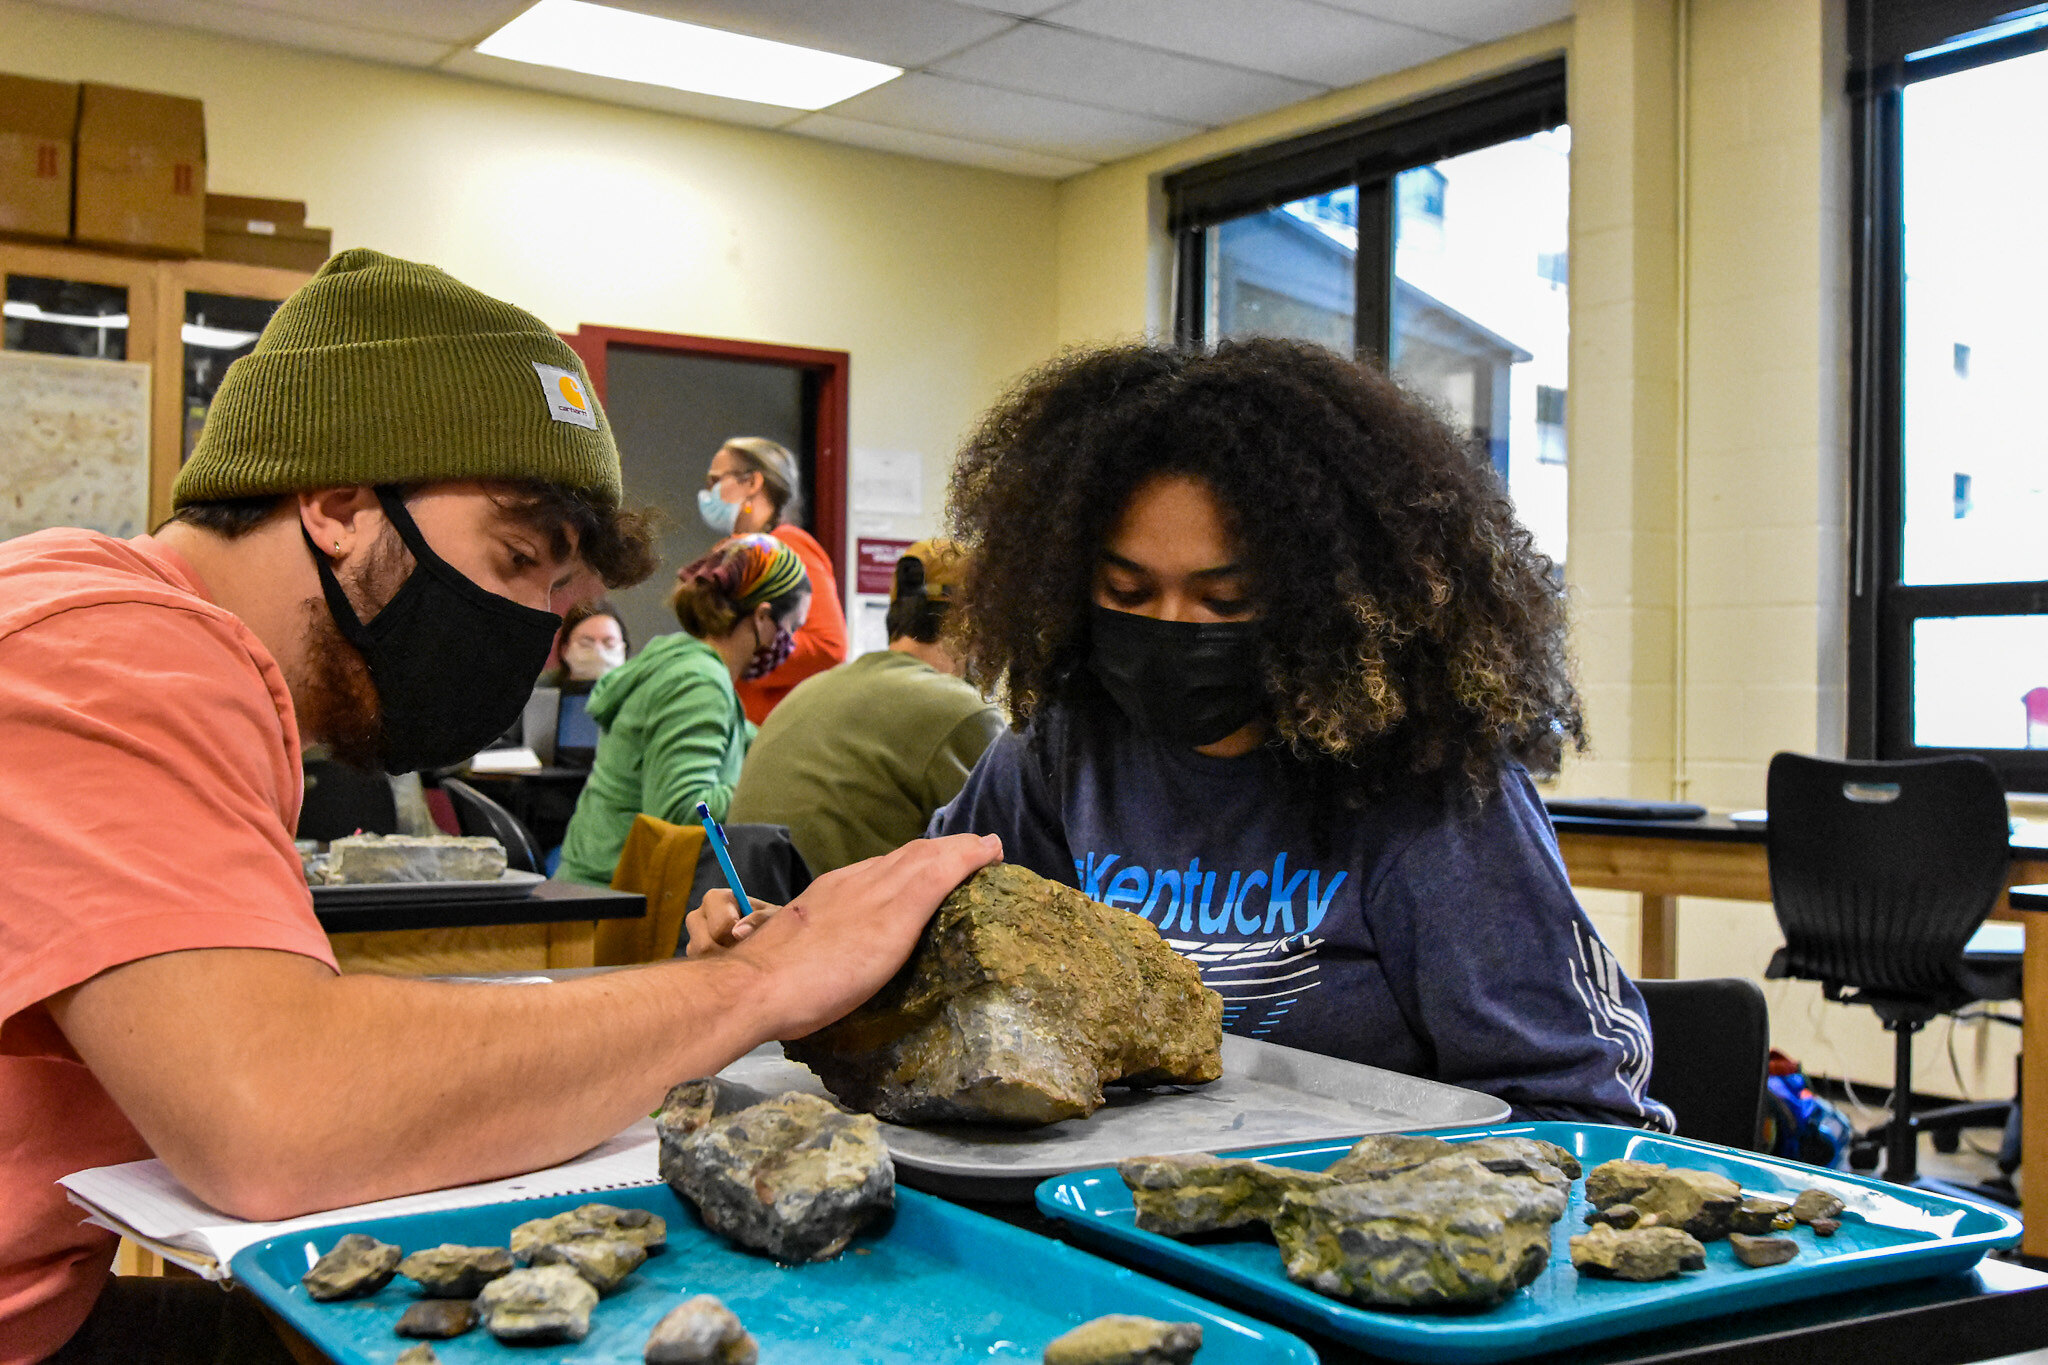 Students looking at rocks